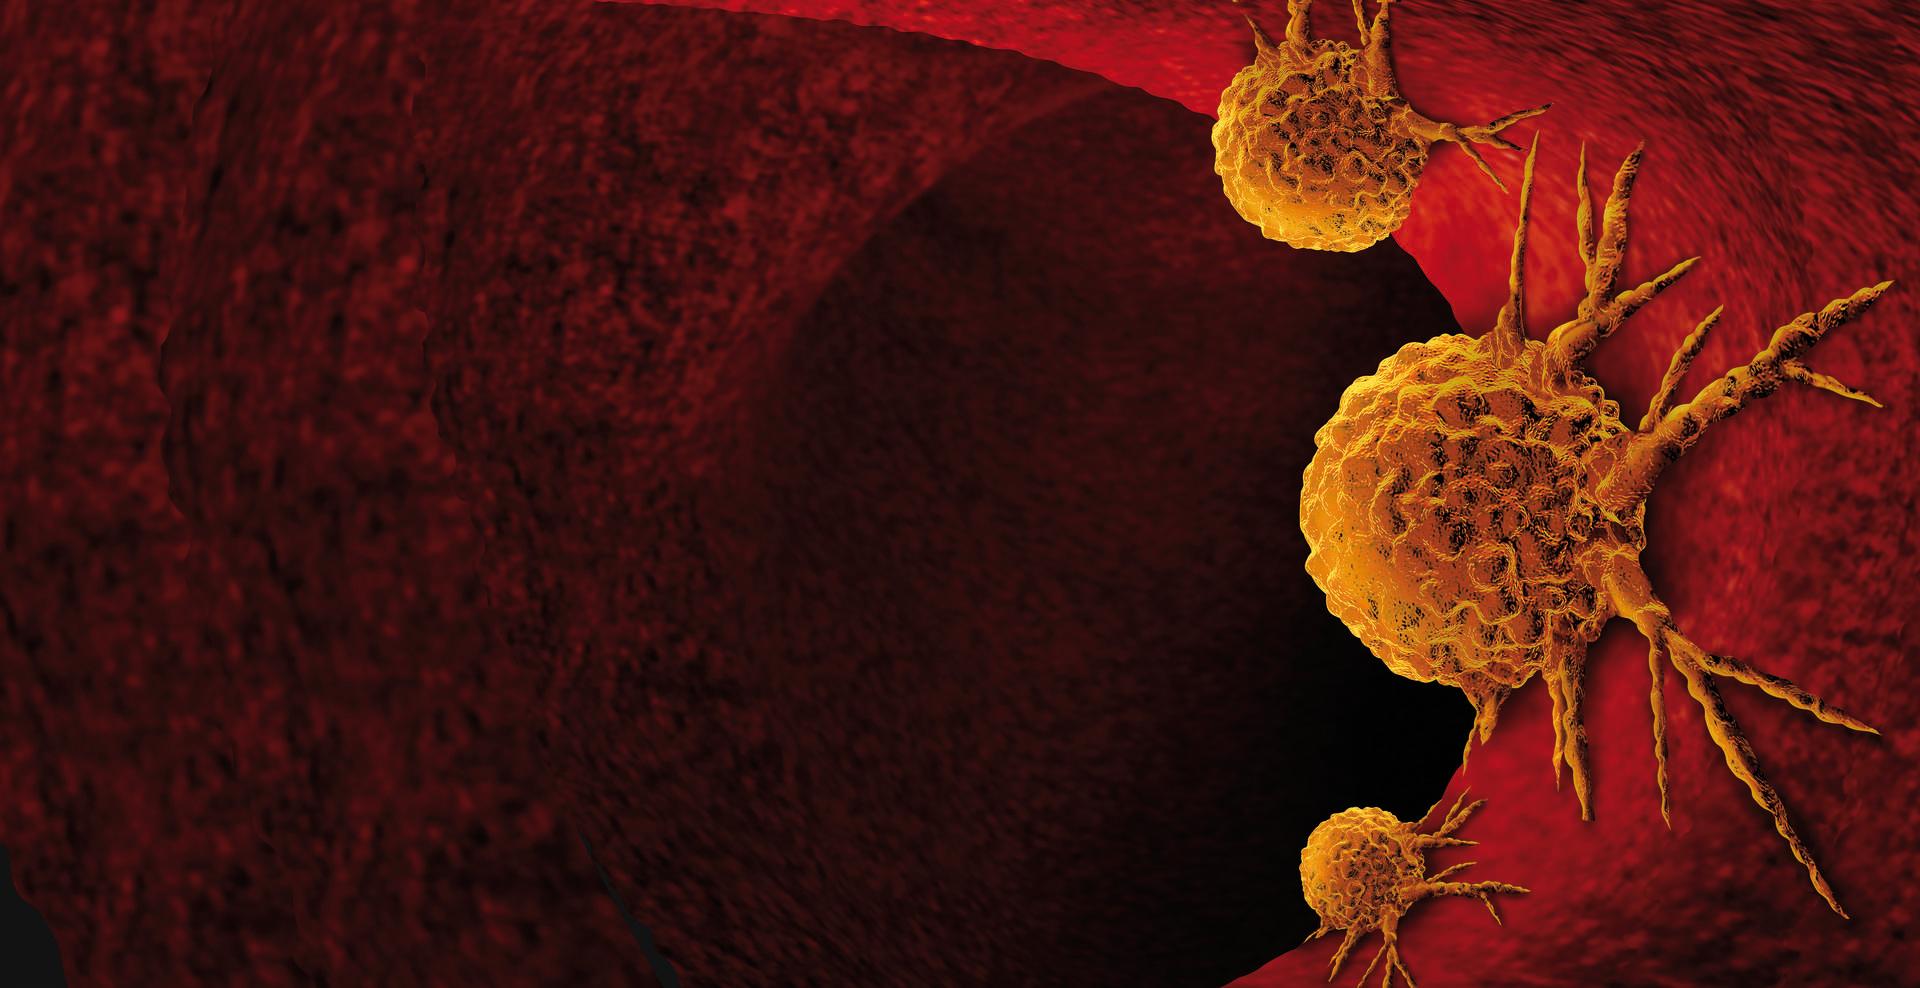 Krebsanatomie im menschlichen Körper als 3D-Render.